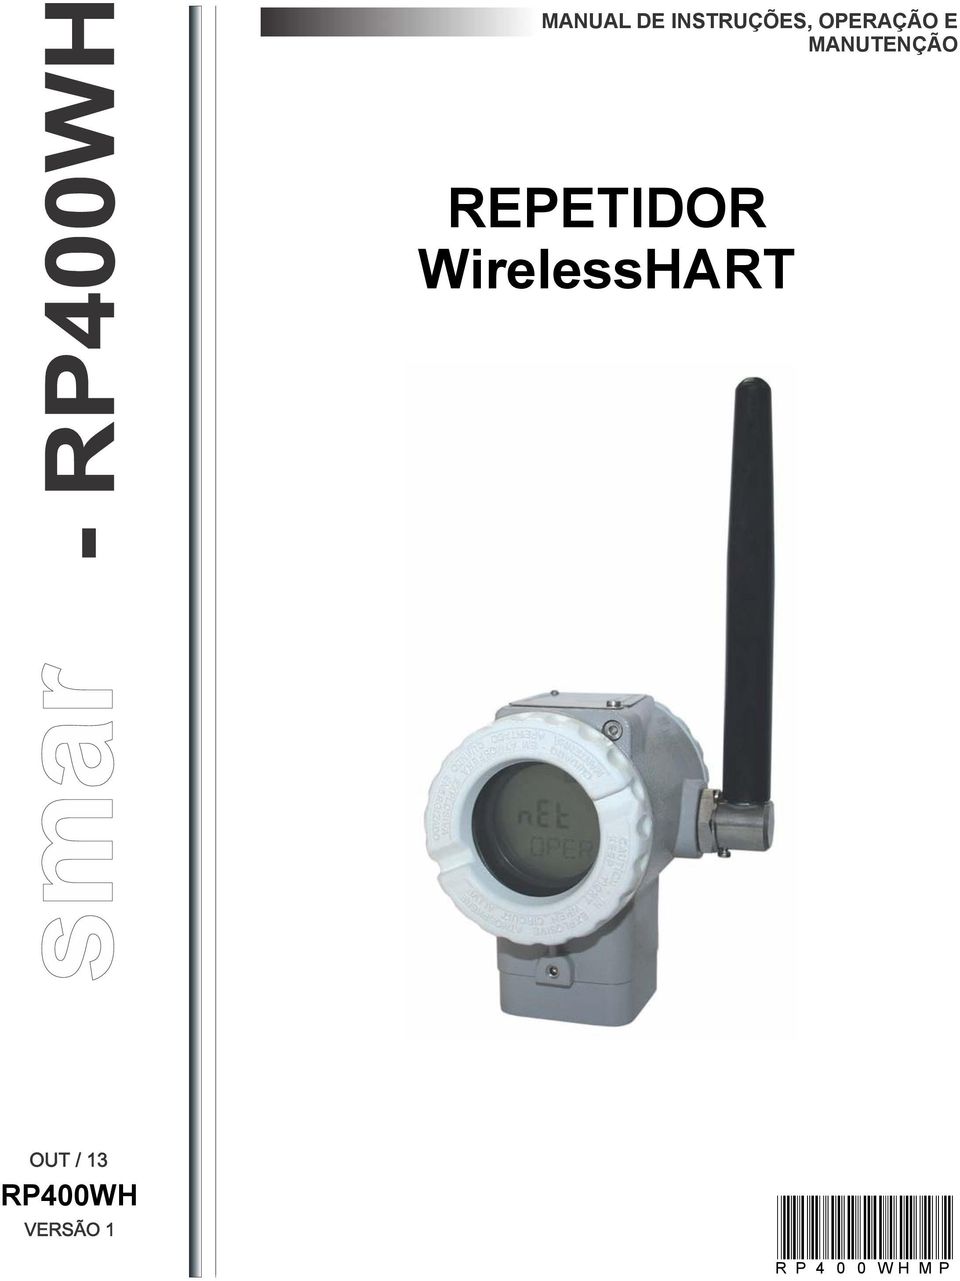 REPETIDOR WirelessHART